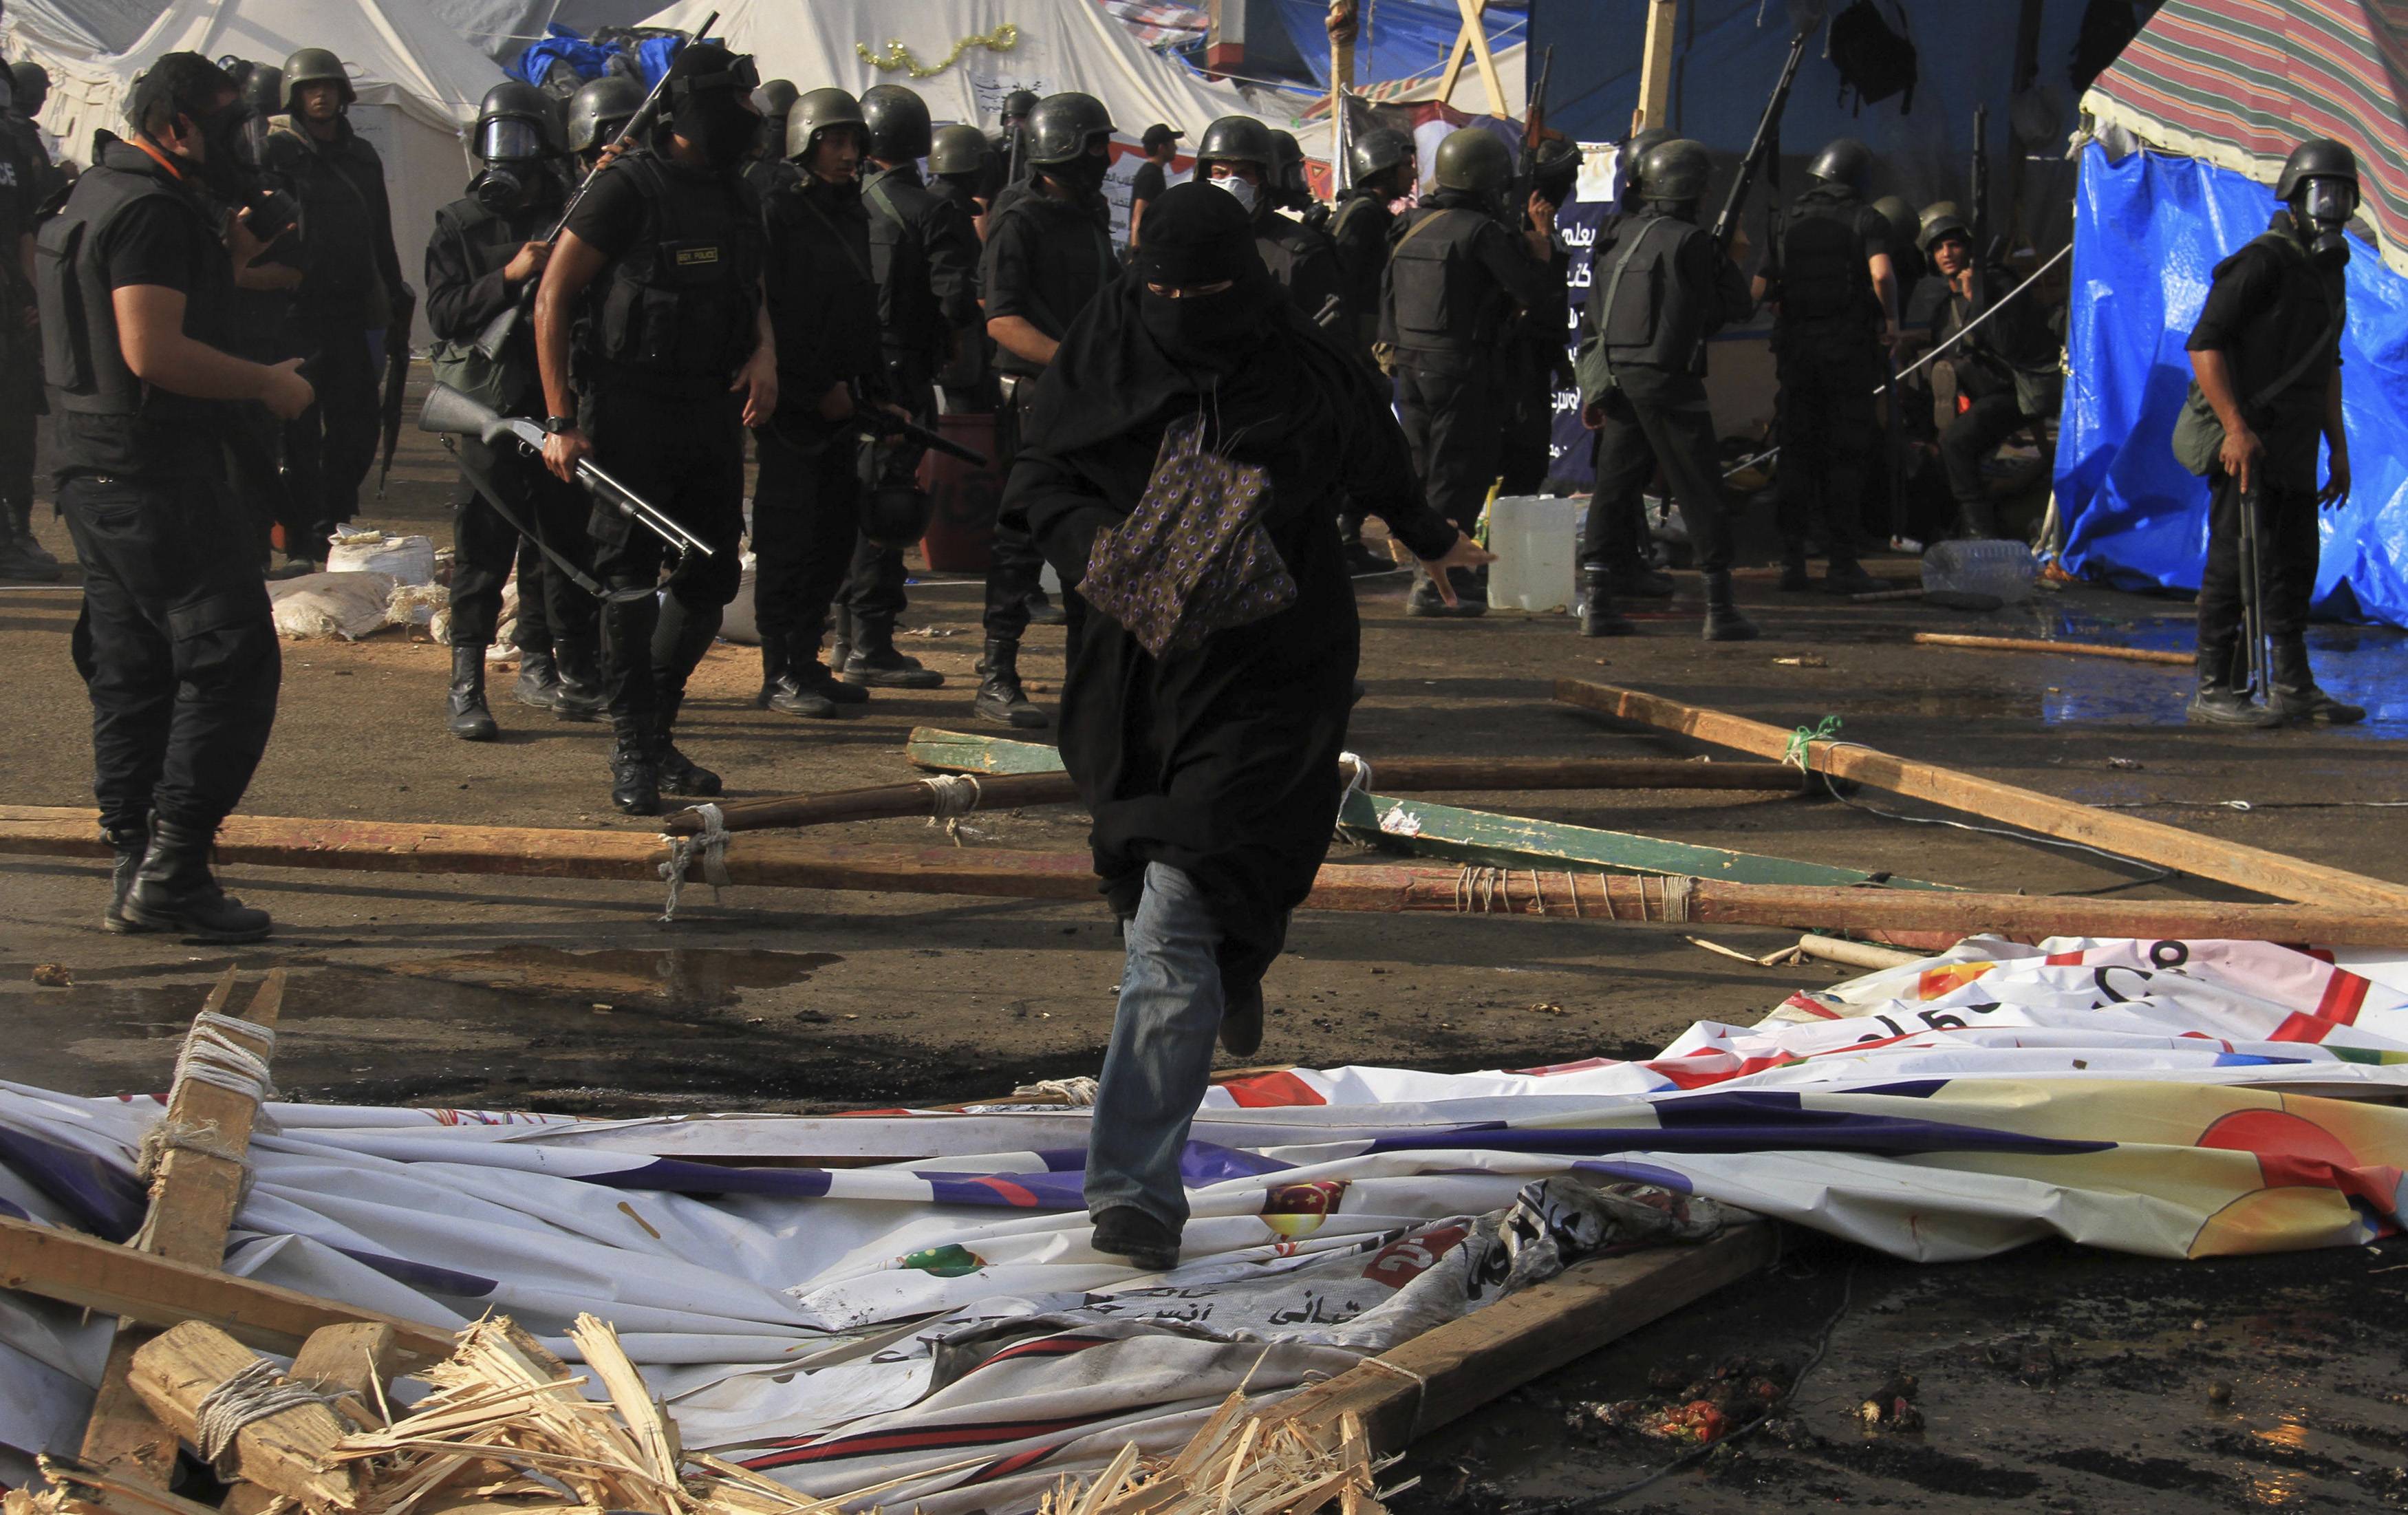 Στις σκηνές των οπαδών του Μόρσι βρέθηκε οπλισμός, σύμφωνα με το στρατό - ΦΩΤΟΓΡΑΦΙΑ REUTERS